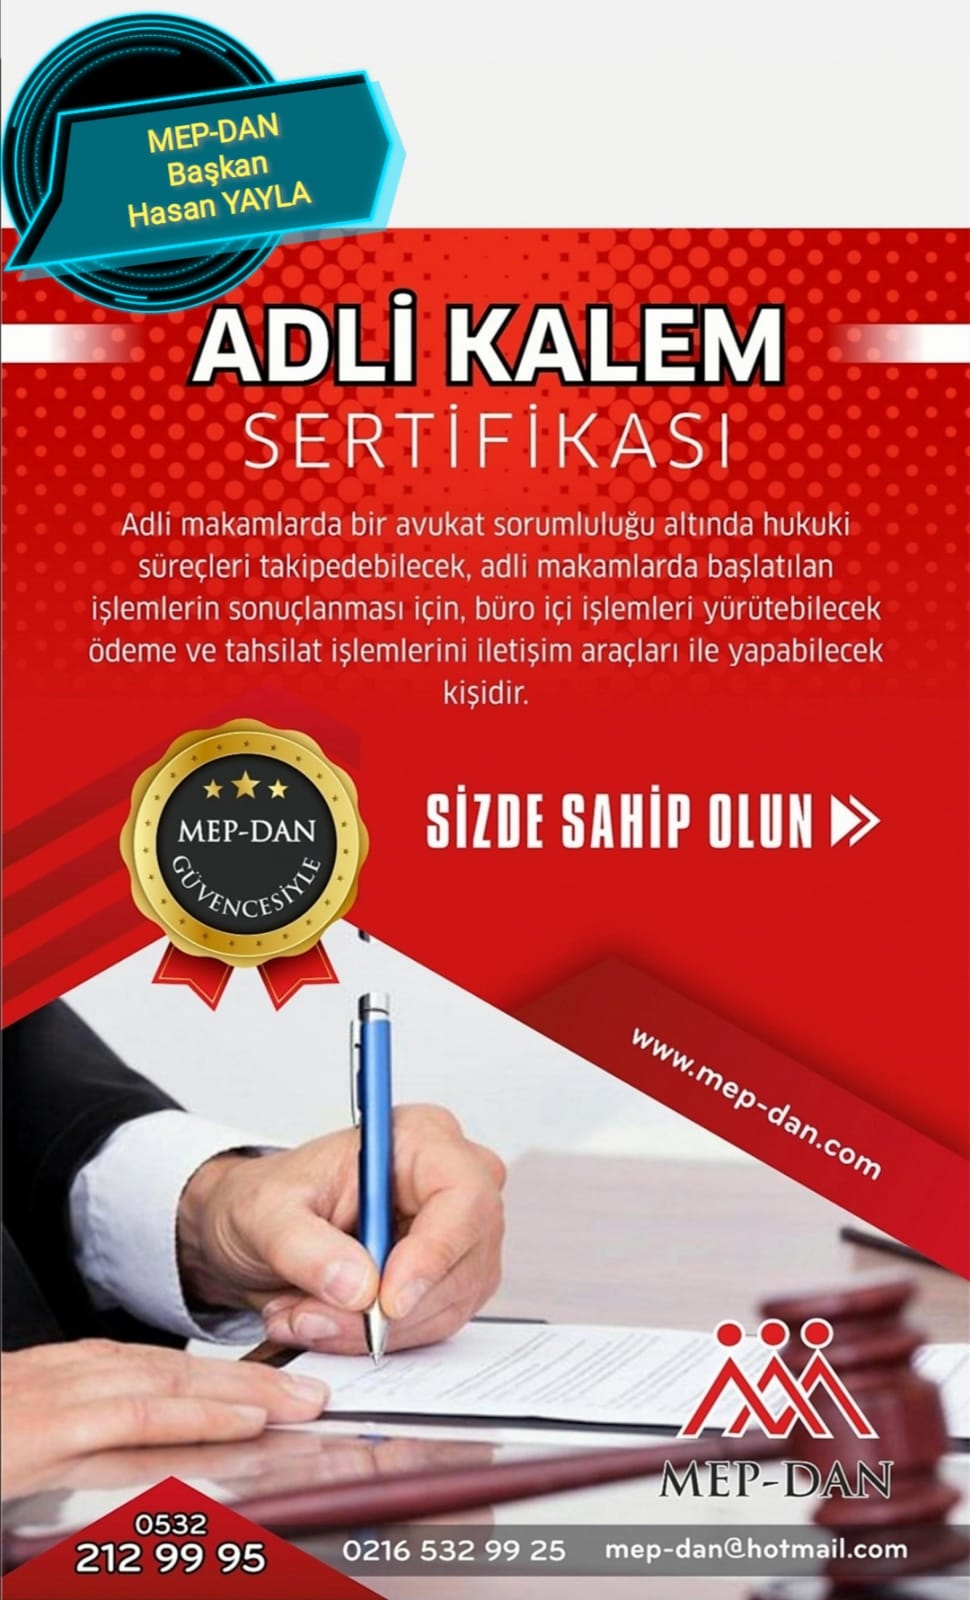 adli kalem sertifikasi